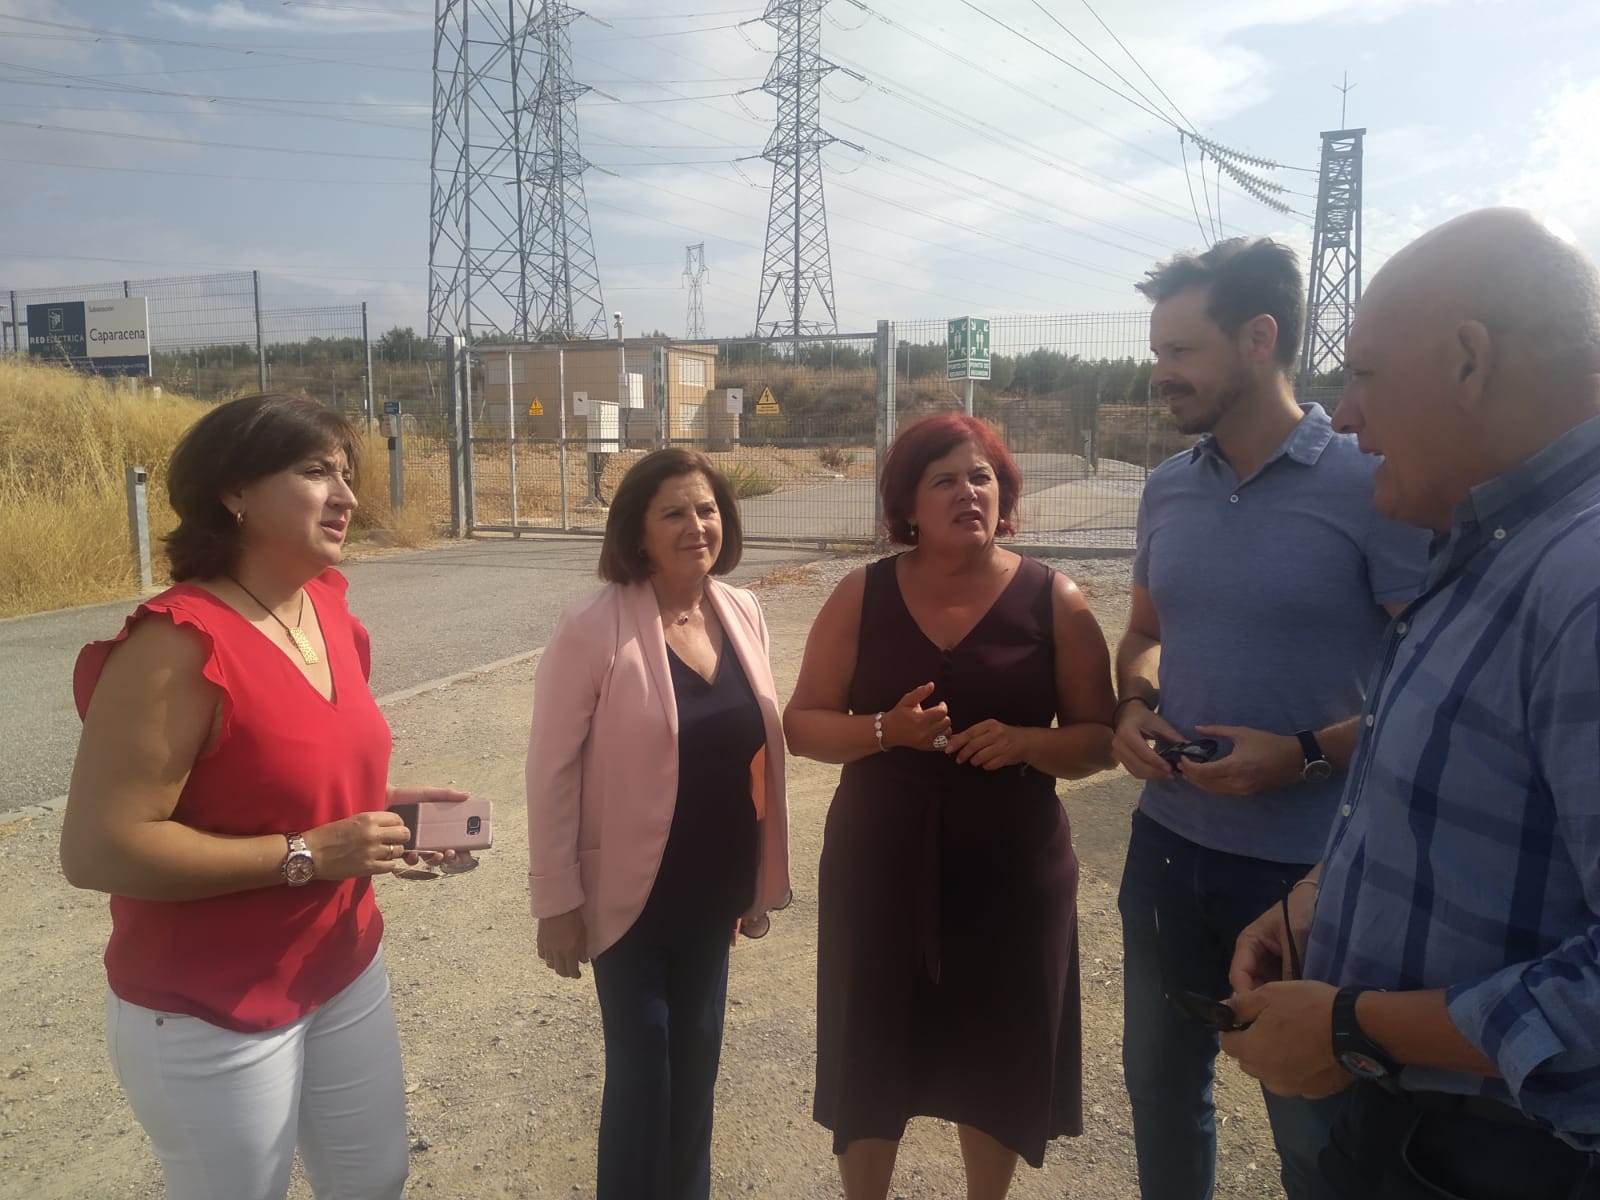 El PSOE asegura que el eje Baza-Caparacena “revolucionará” el suministro energético en la zona Norte